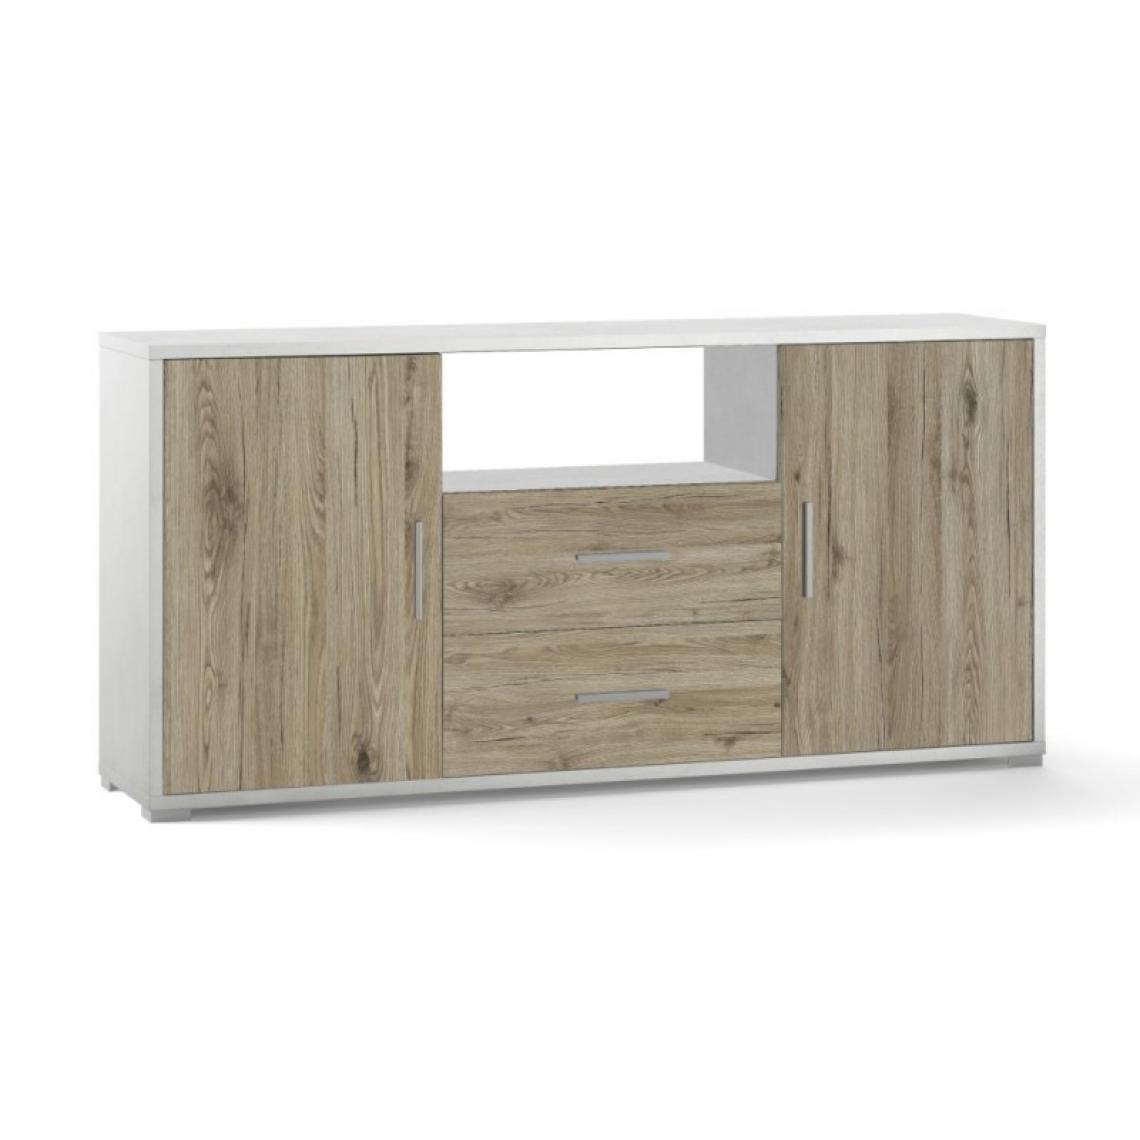 Webmarketpoint - Buffet avec deux portes et deux tiroirs Chêne blanc 174x41x h84 cm - Buffets, chiffonniers